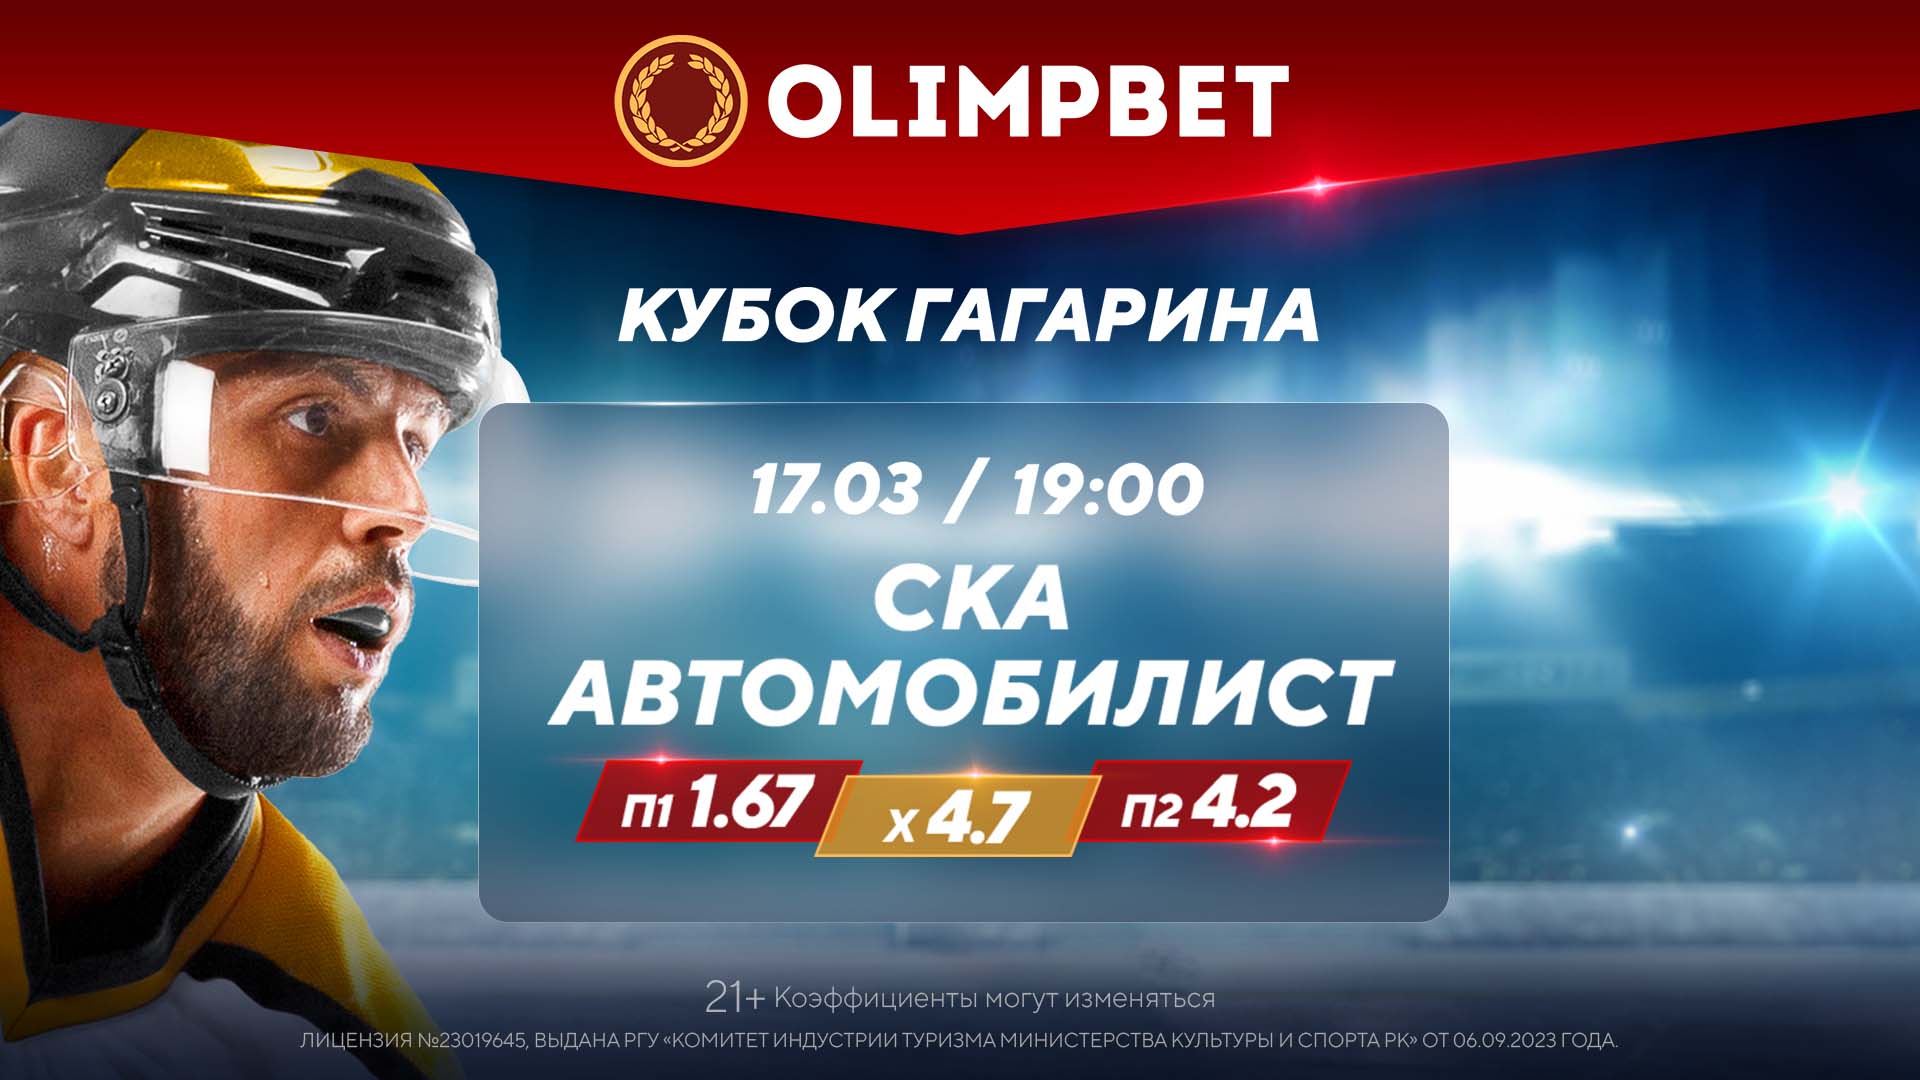 Матч главного фаворита Кубка Гагарина – в коэффициентах Olimpbet